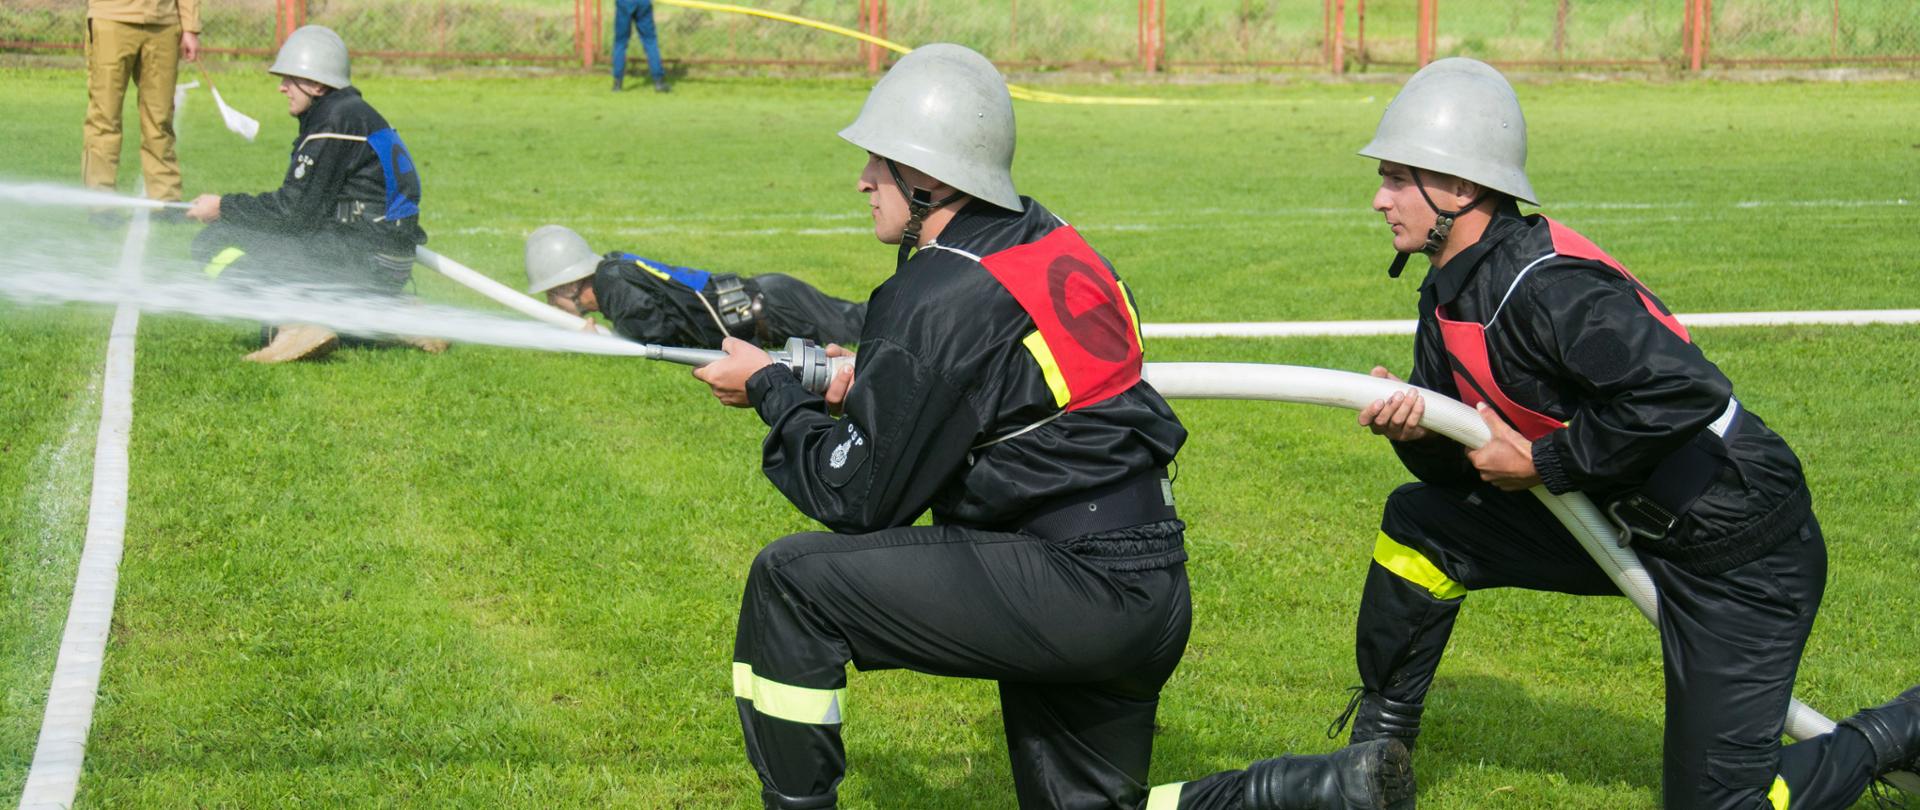 Kolorowa fotografia wykonana w pochmurny dzień na zewnątrz. Przedstawia strażaków OSP ubranych w hełmy i ubrania koszarowe podczas zawodów sportowo pożarniczych w czasie ćwiczenia bojowego. Na drugim planie sędzia zawodów w jasnym ubraniu służbowym.